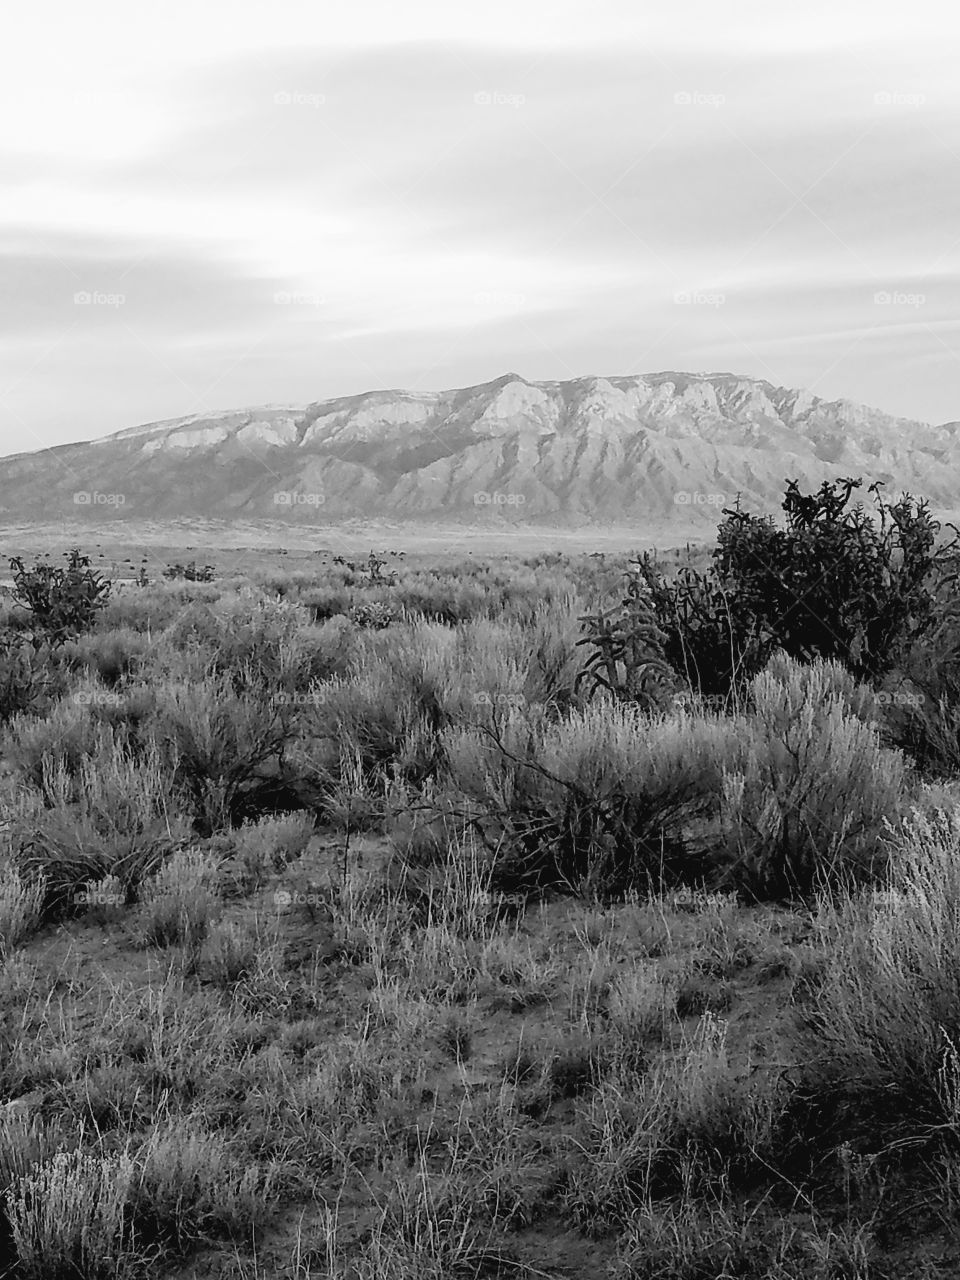 View of the Sandia Mountain